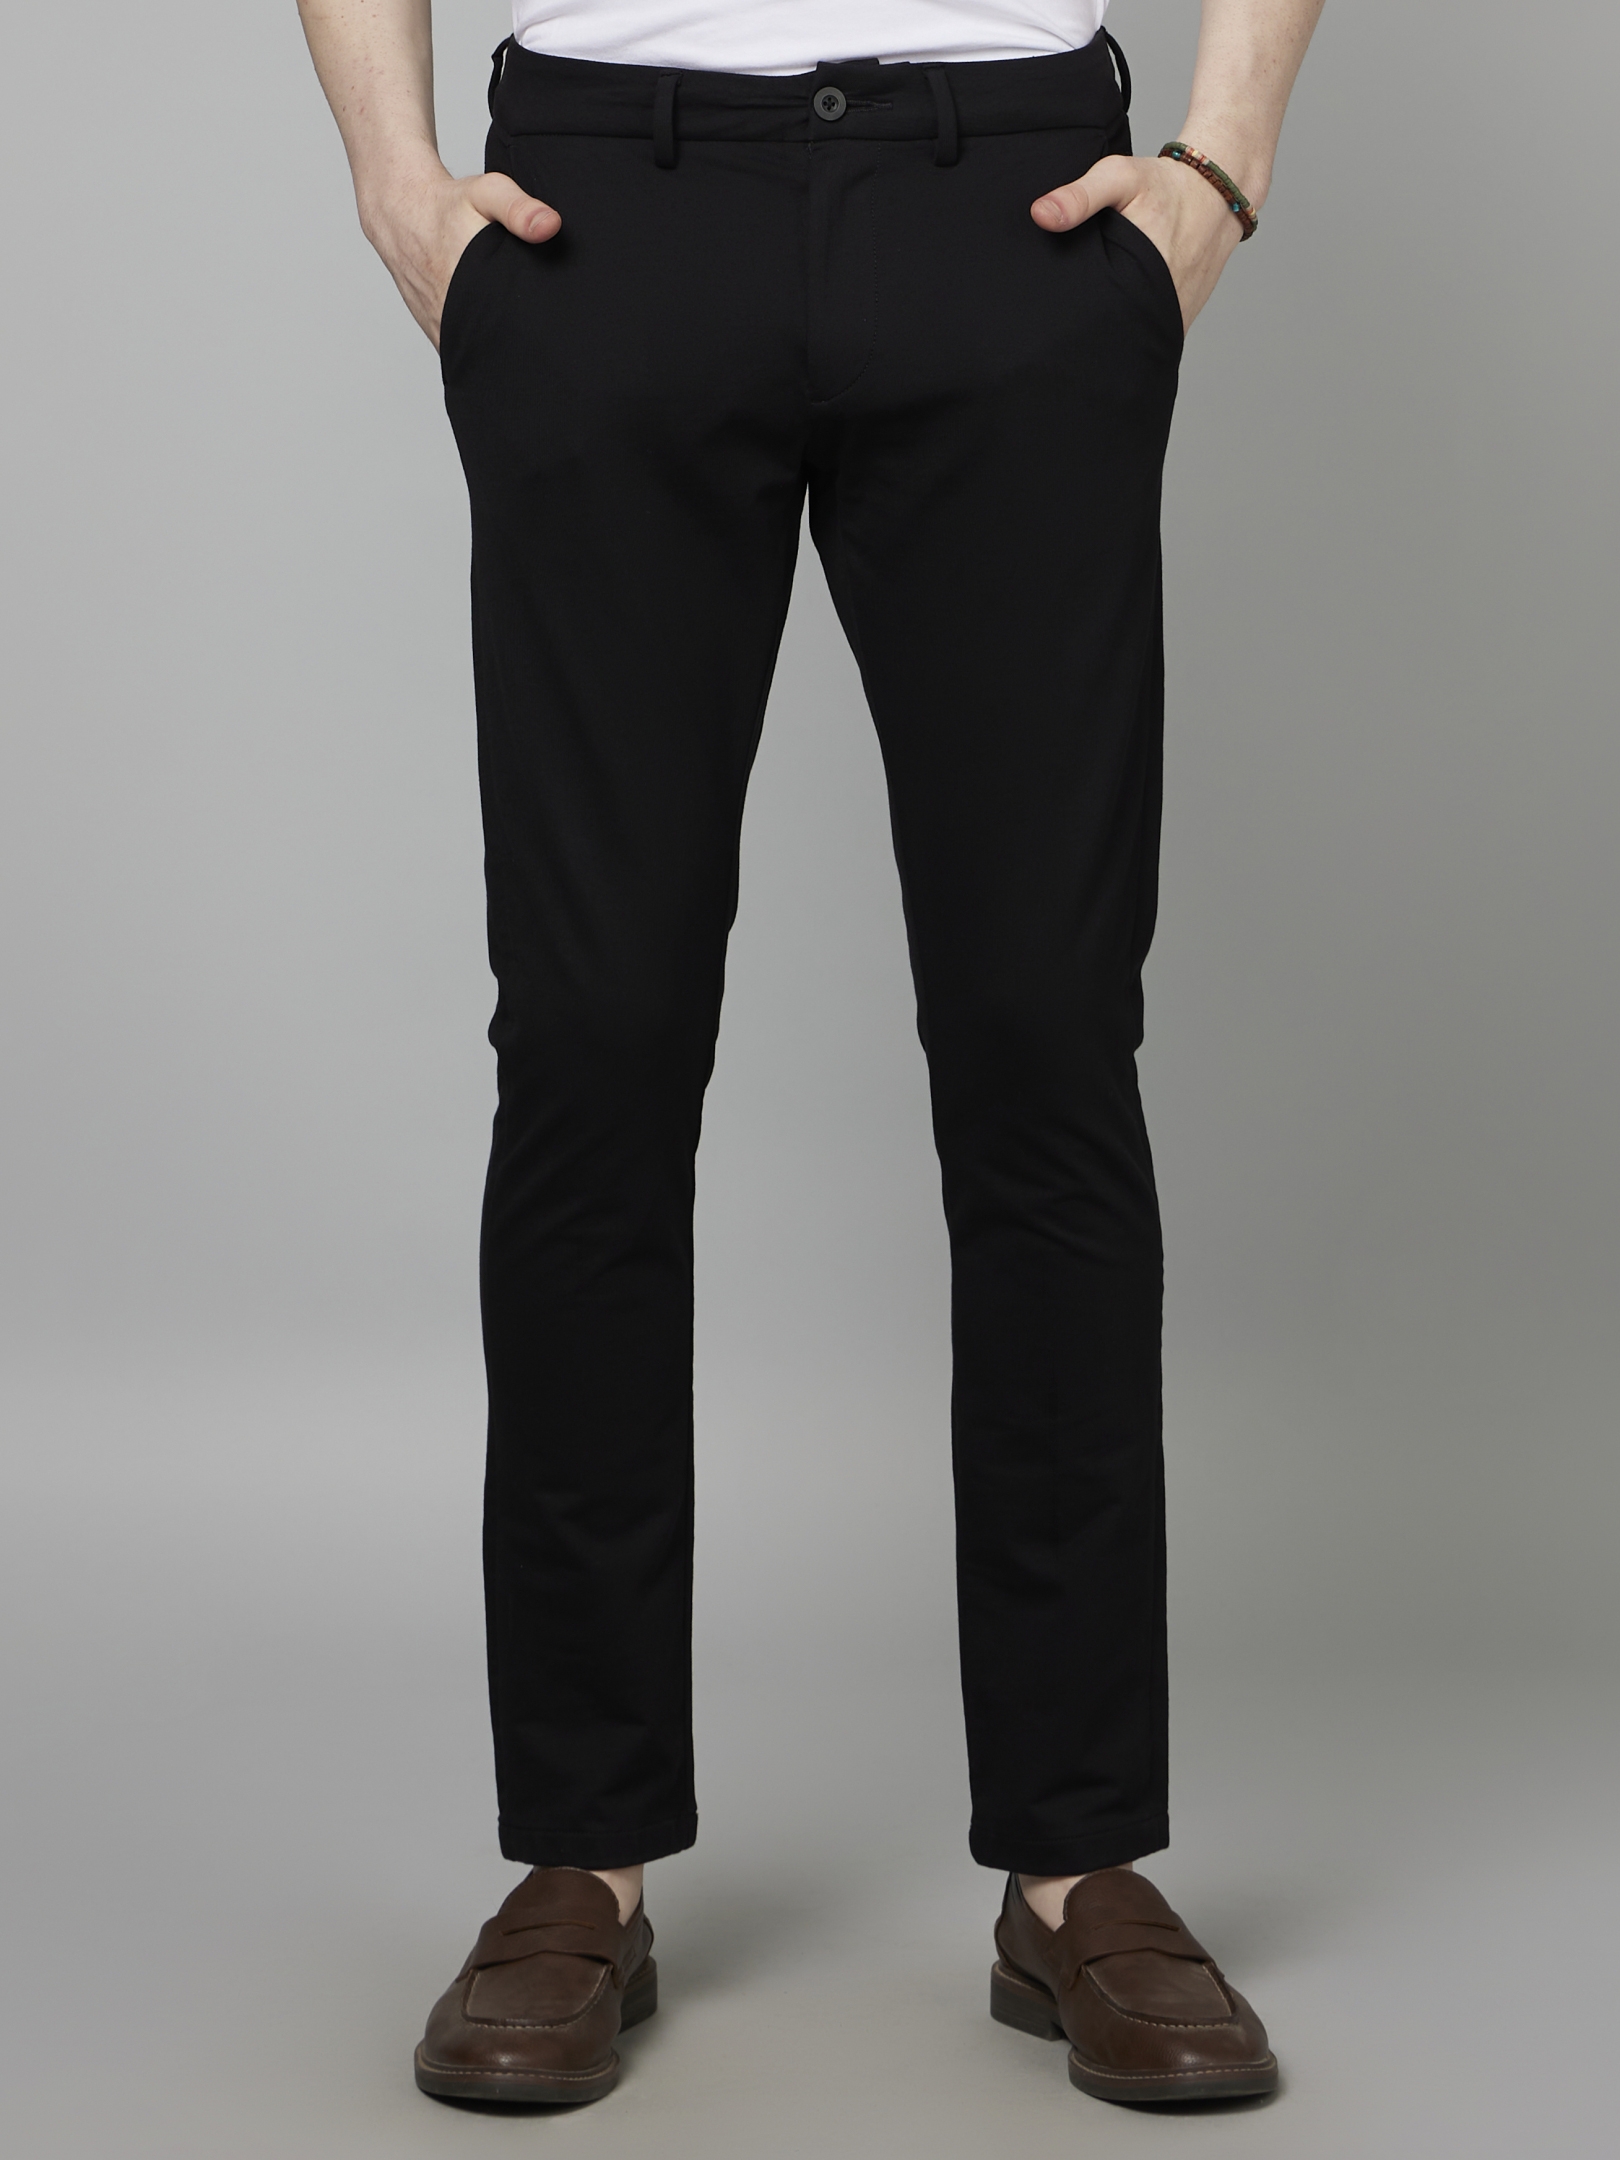 Men's Black Cotton Blend Solid Trousers